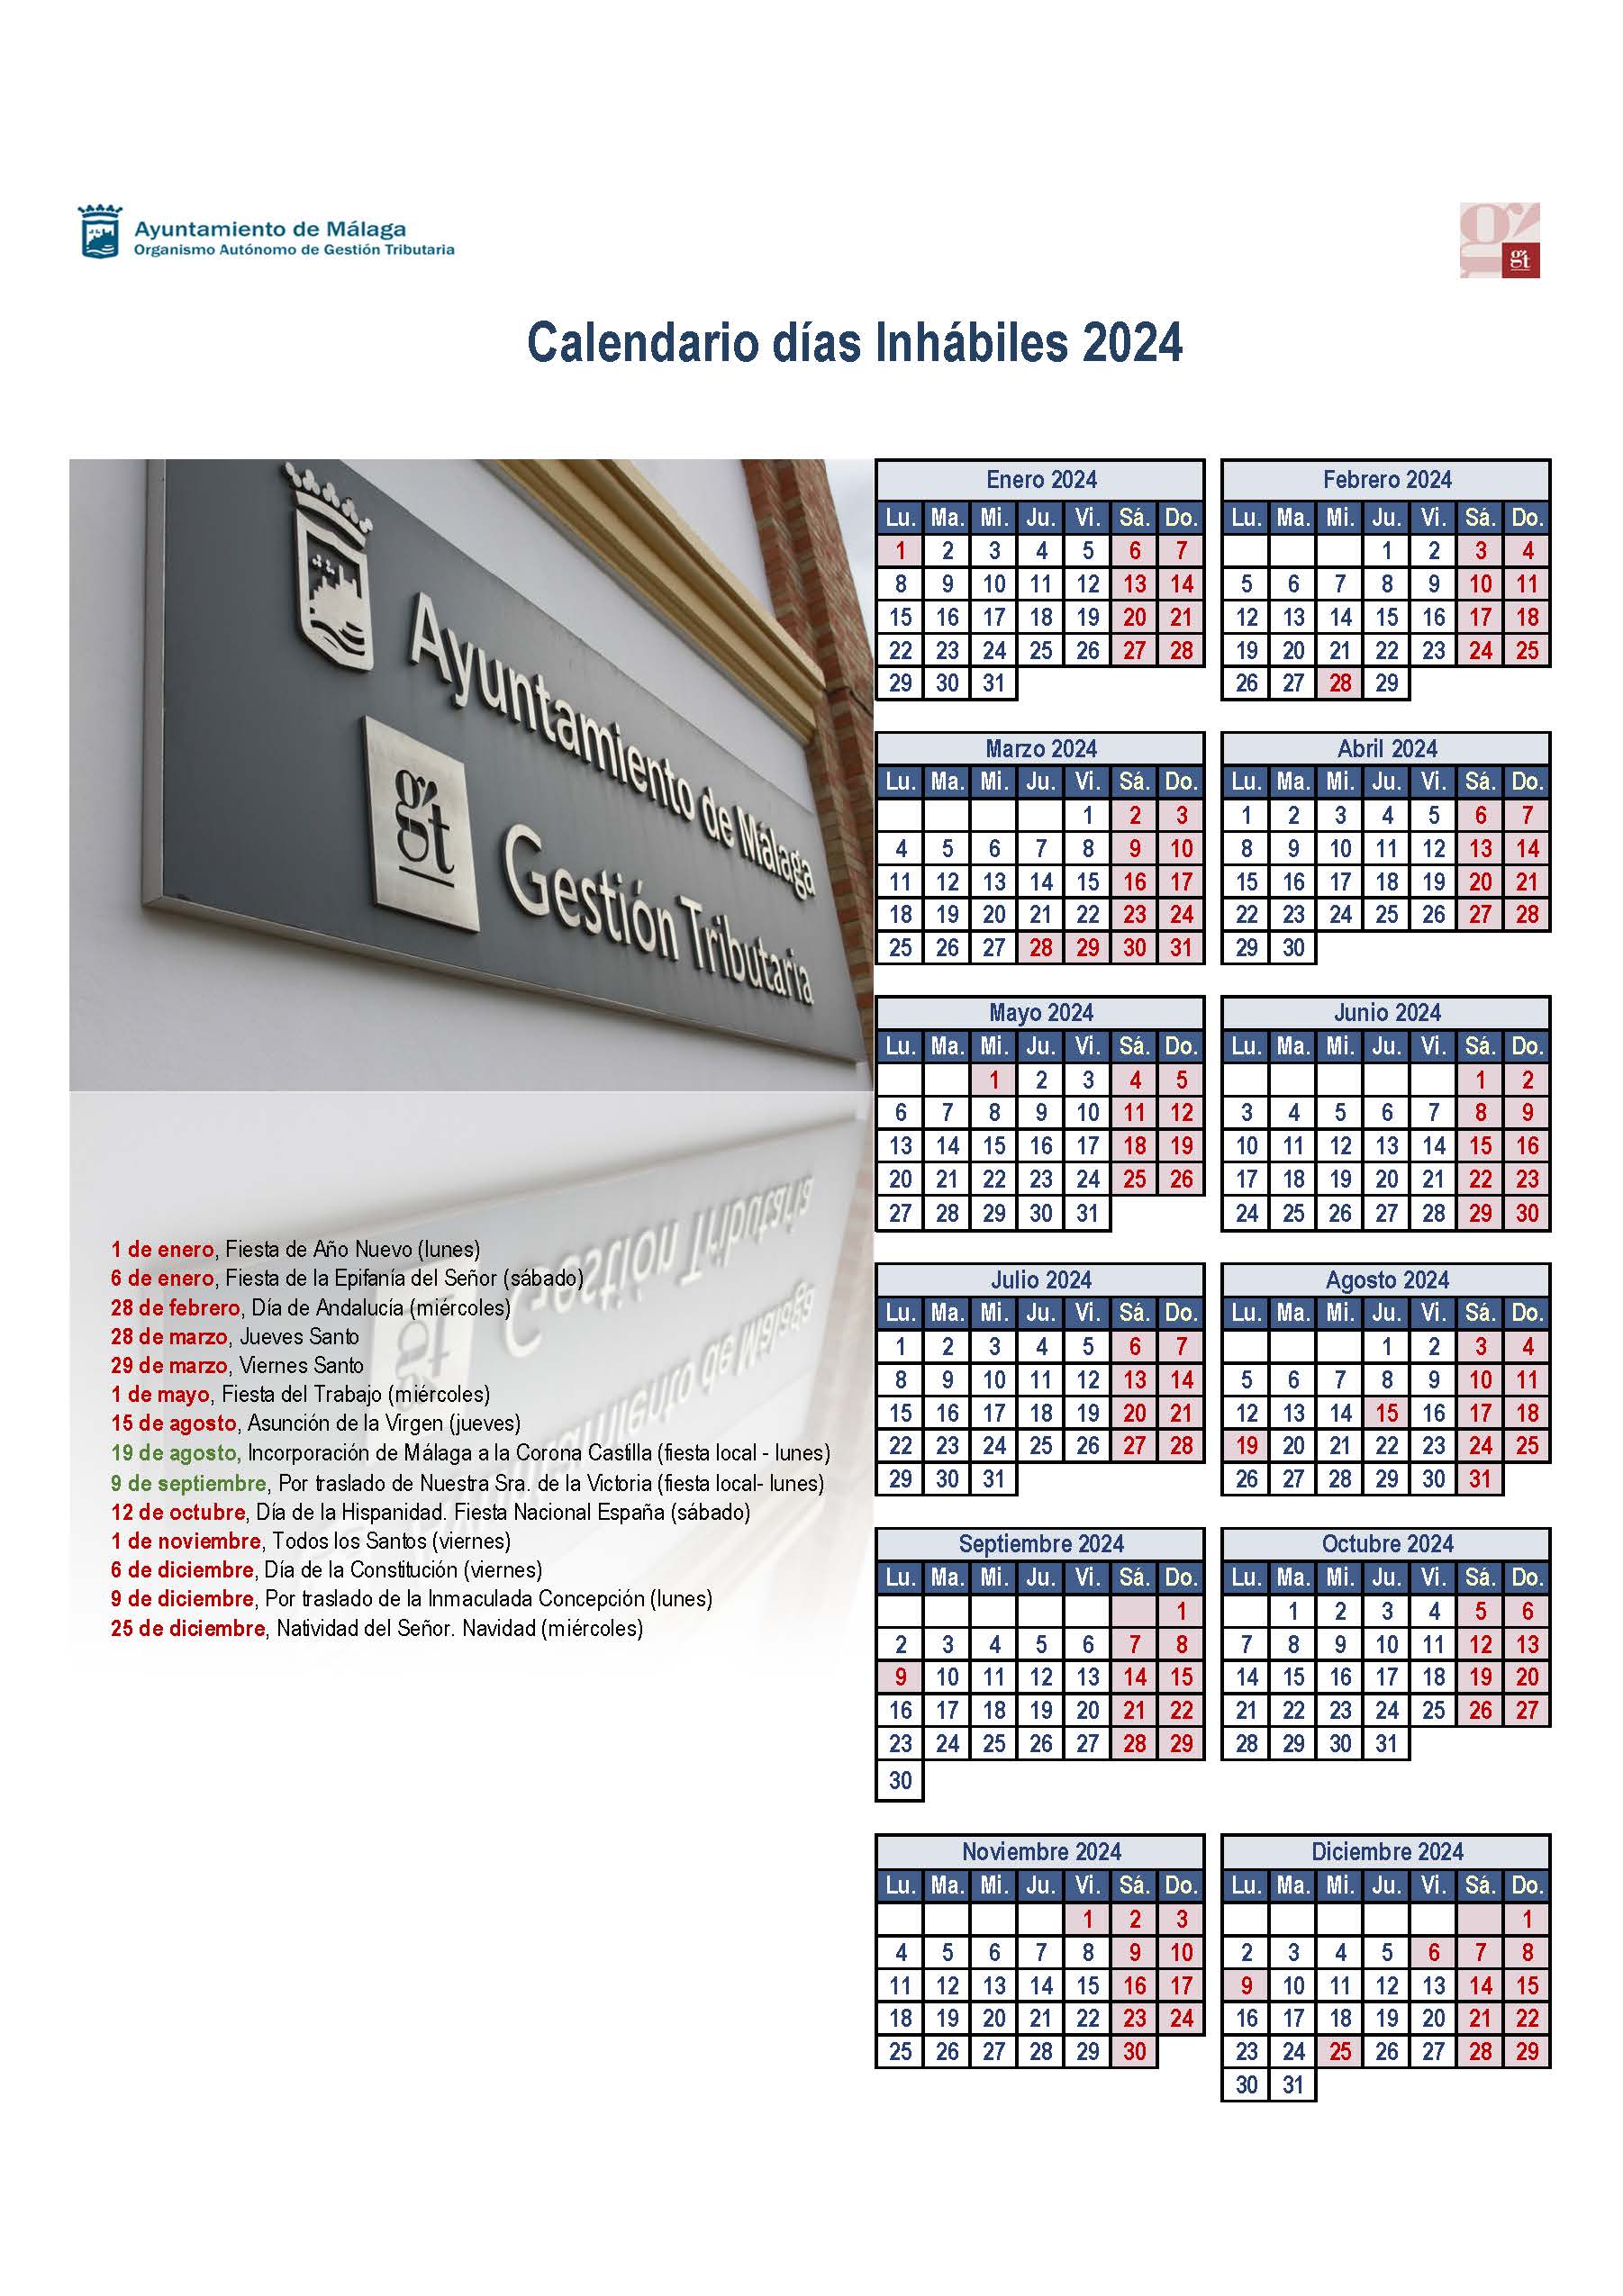 Calendario días inhabiles 2024